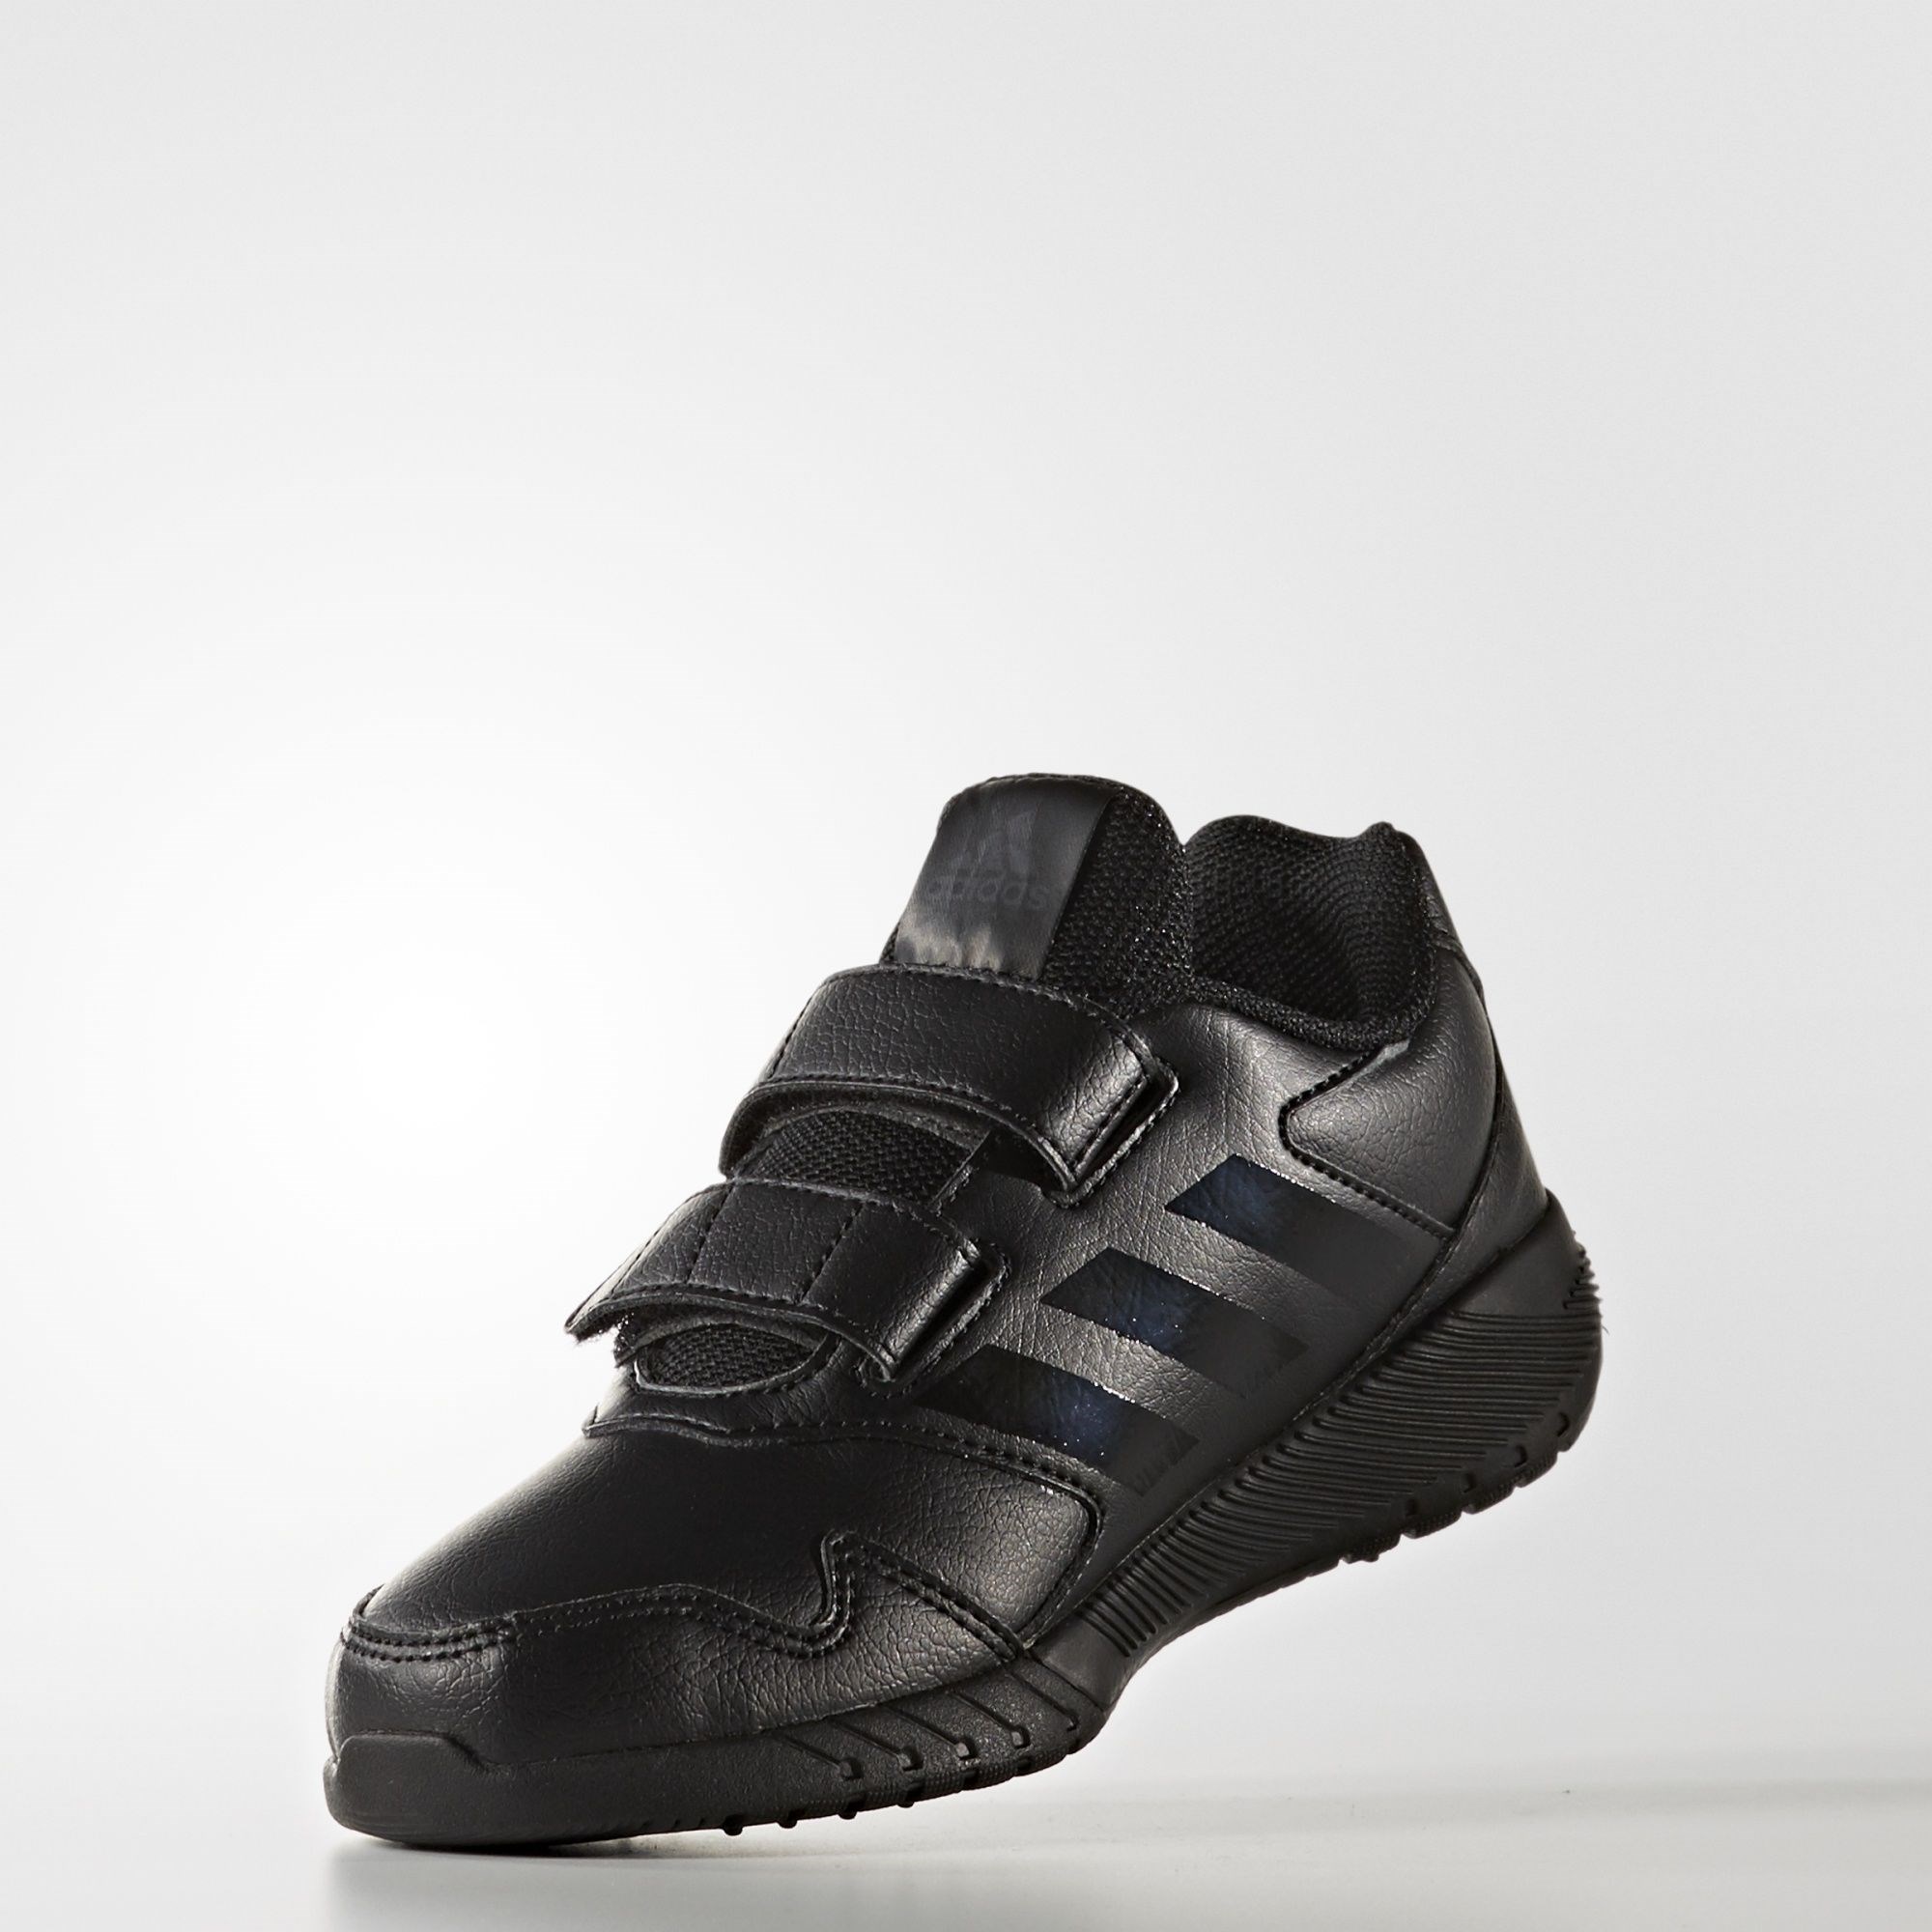 adidas AltaRun CF K Çocuk Spor Ayakkabı Ürün kodu: BA9422 | Etichet Sport